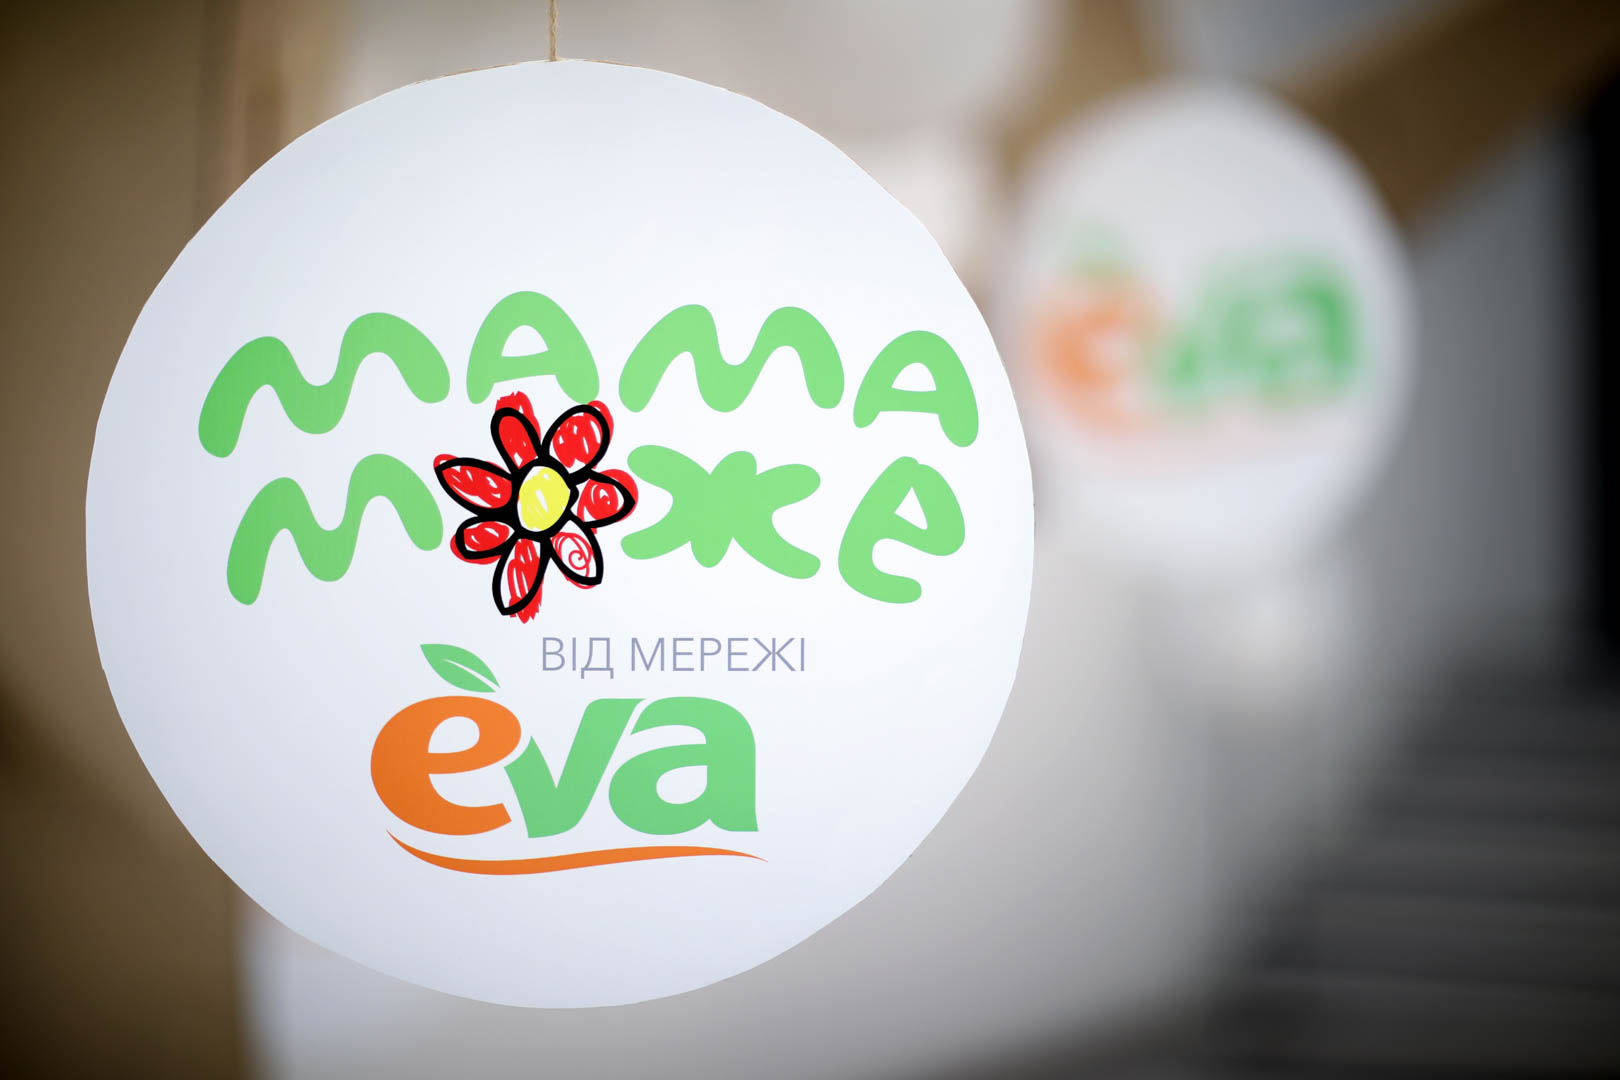 Лінія магазинів EVA нагородила найкращих матусь України на конференції “Мама Може” (ФОТО)